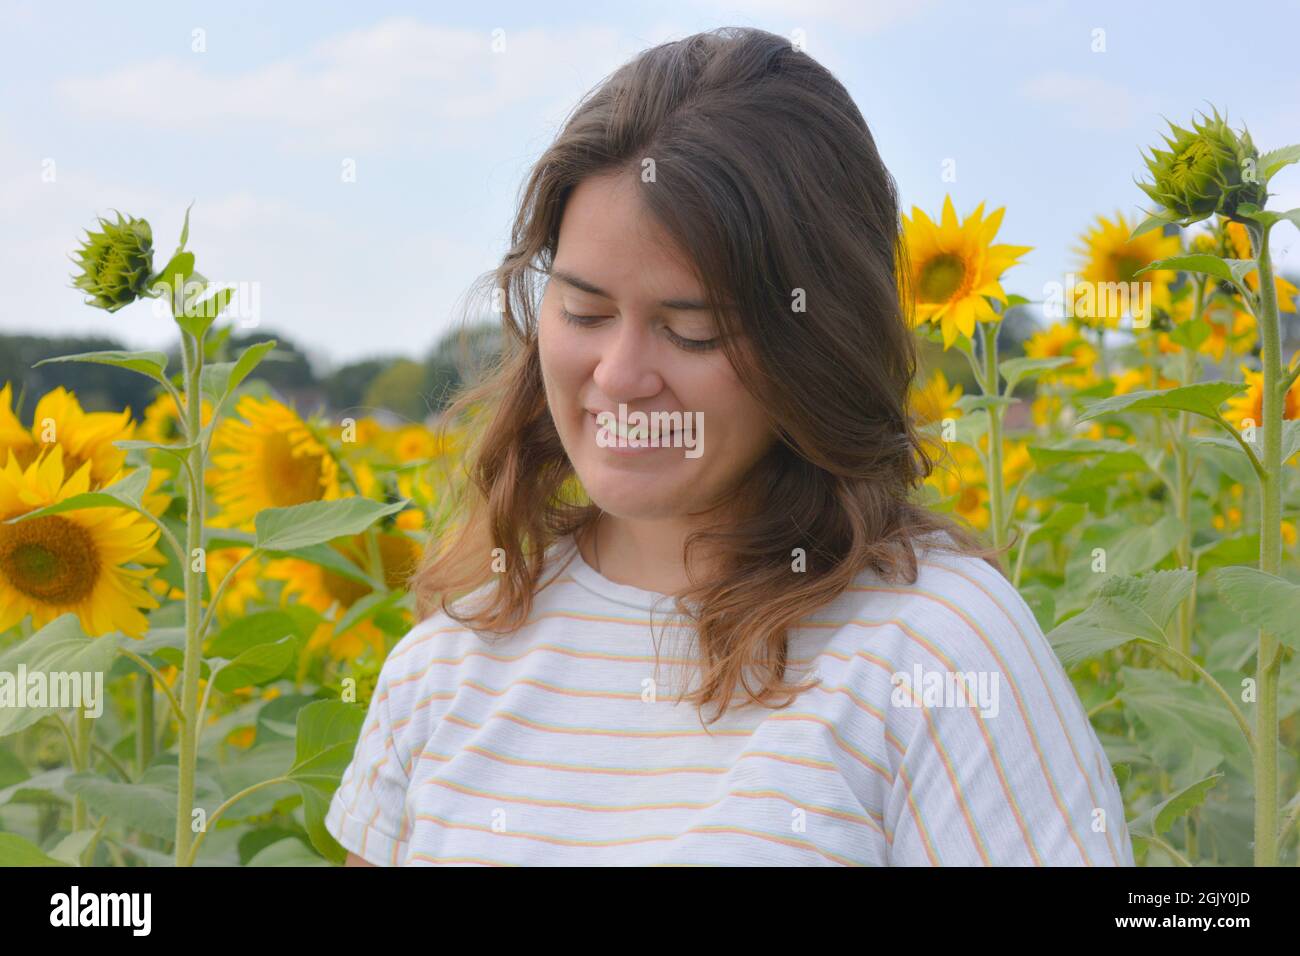 Ehrliches Porträt einer schönen jungen Frau, die im Freien in einem Sonnenblumenfeld nach unten schaut, Stockfoto